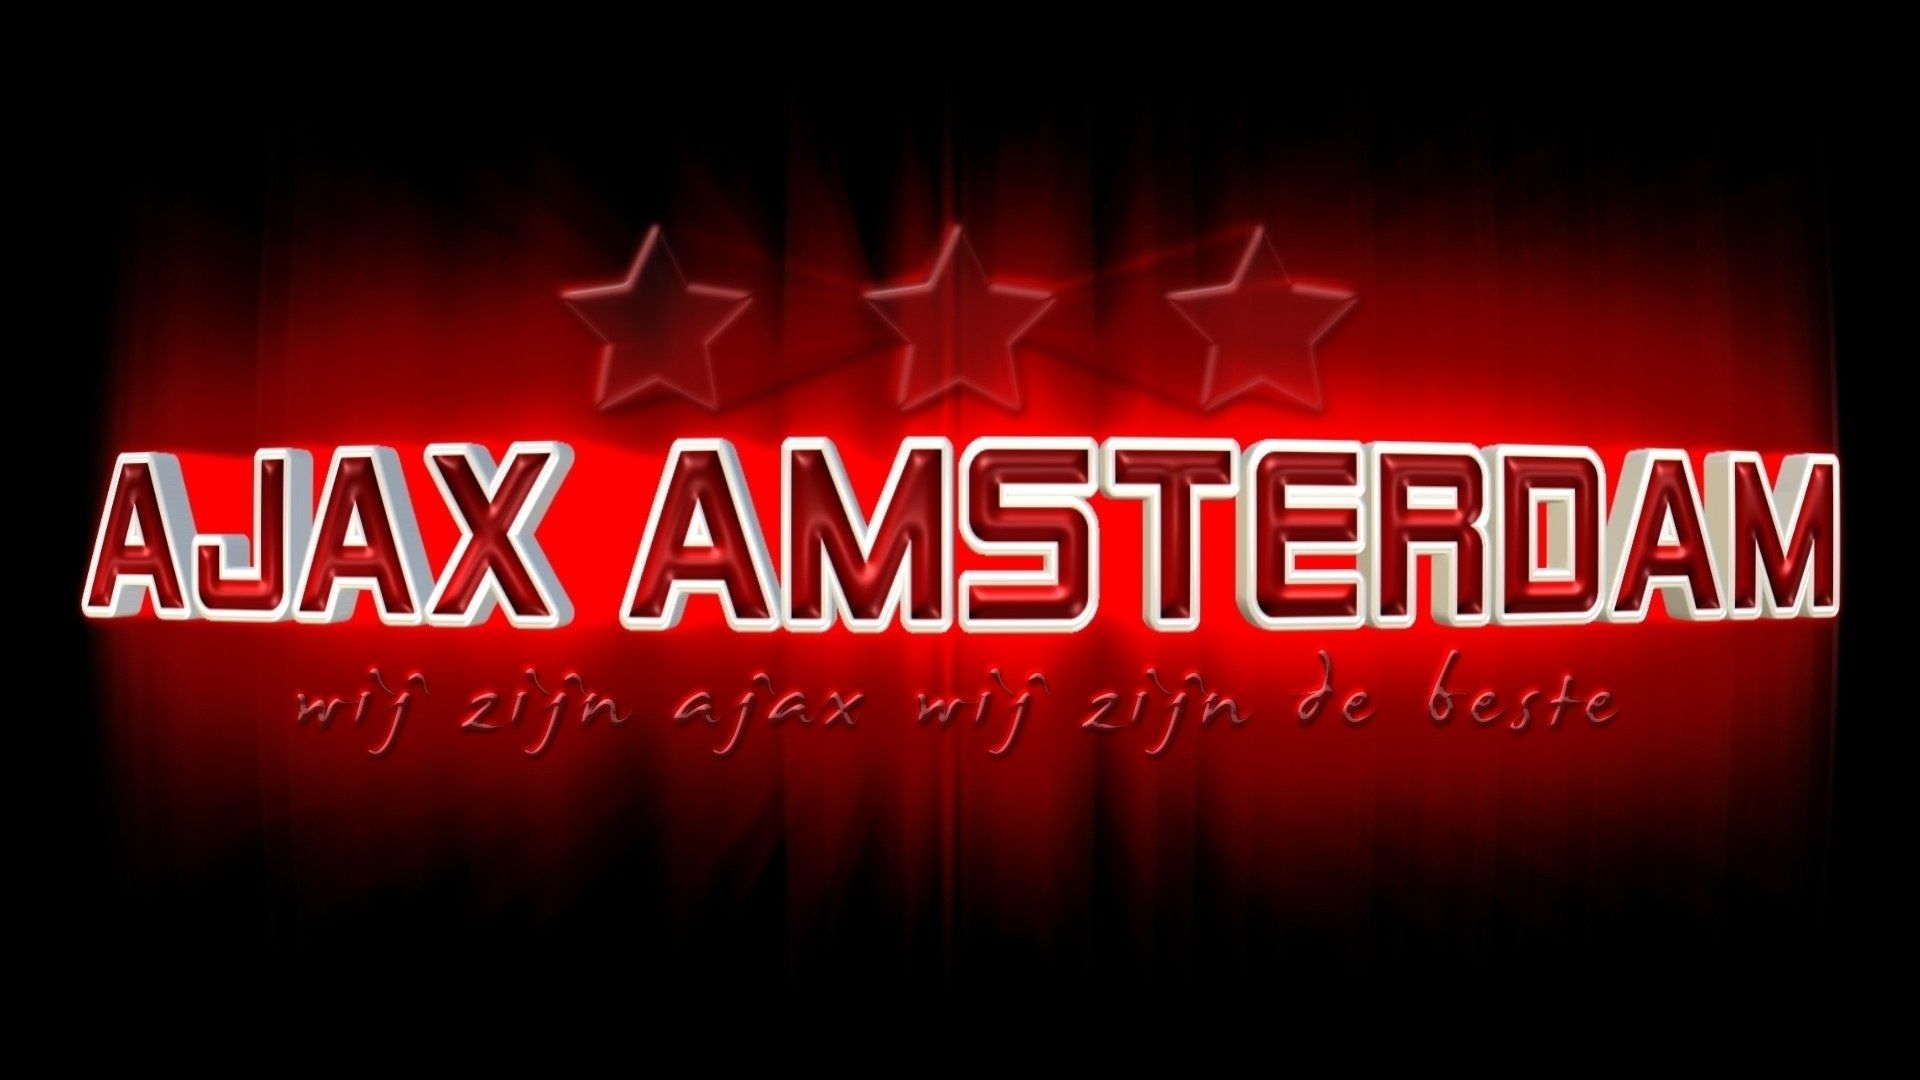 Ajax Desktop Wallpaper Football Wallpaper